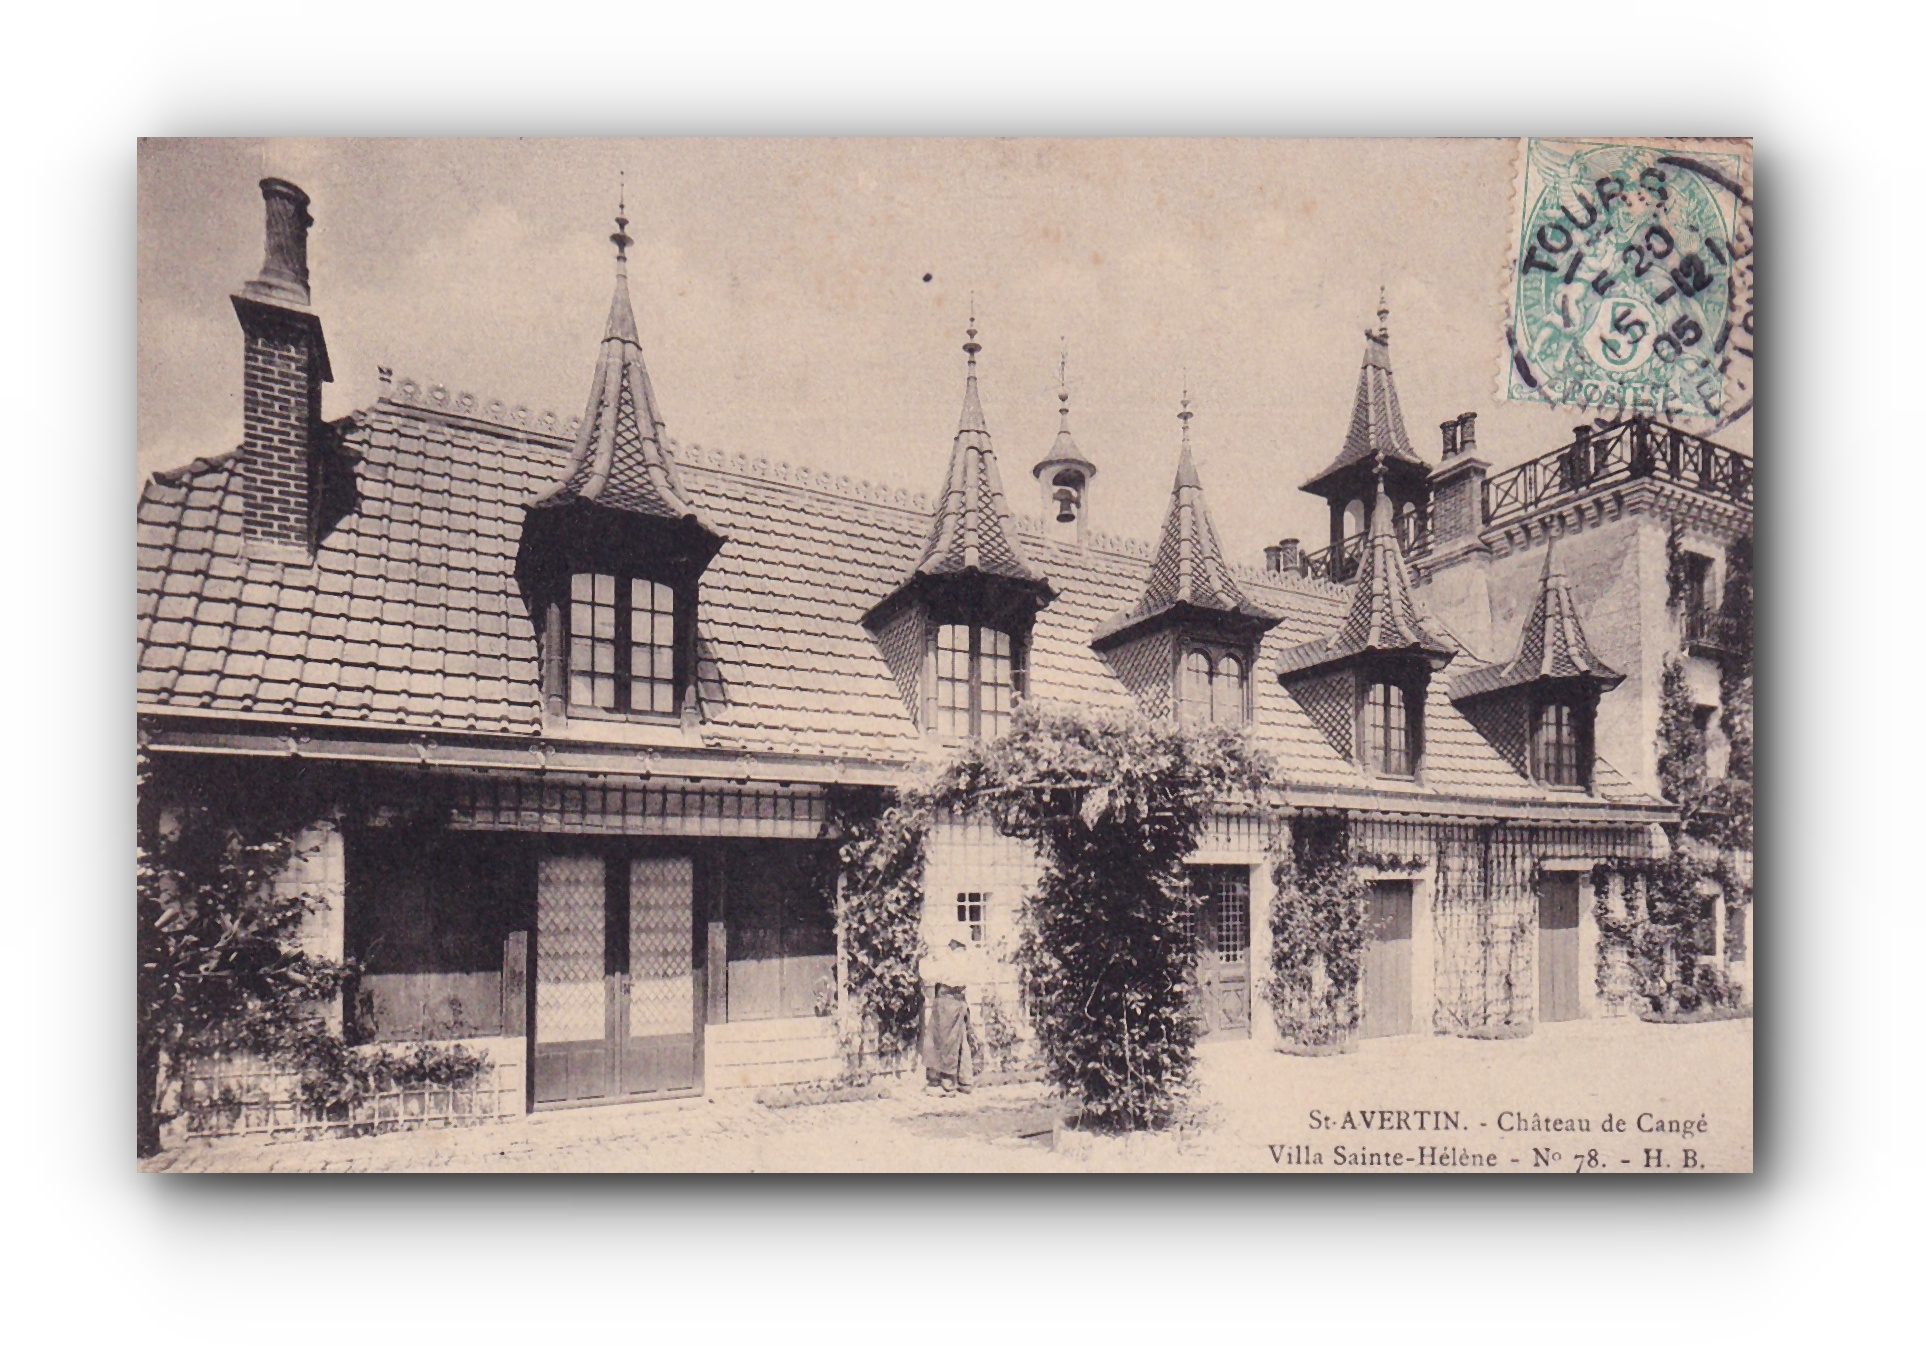 - Château de Cangé - St. AVERTIN - 15.12.1905 -